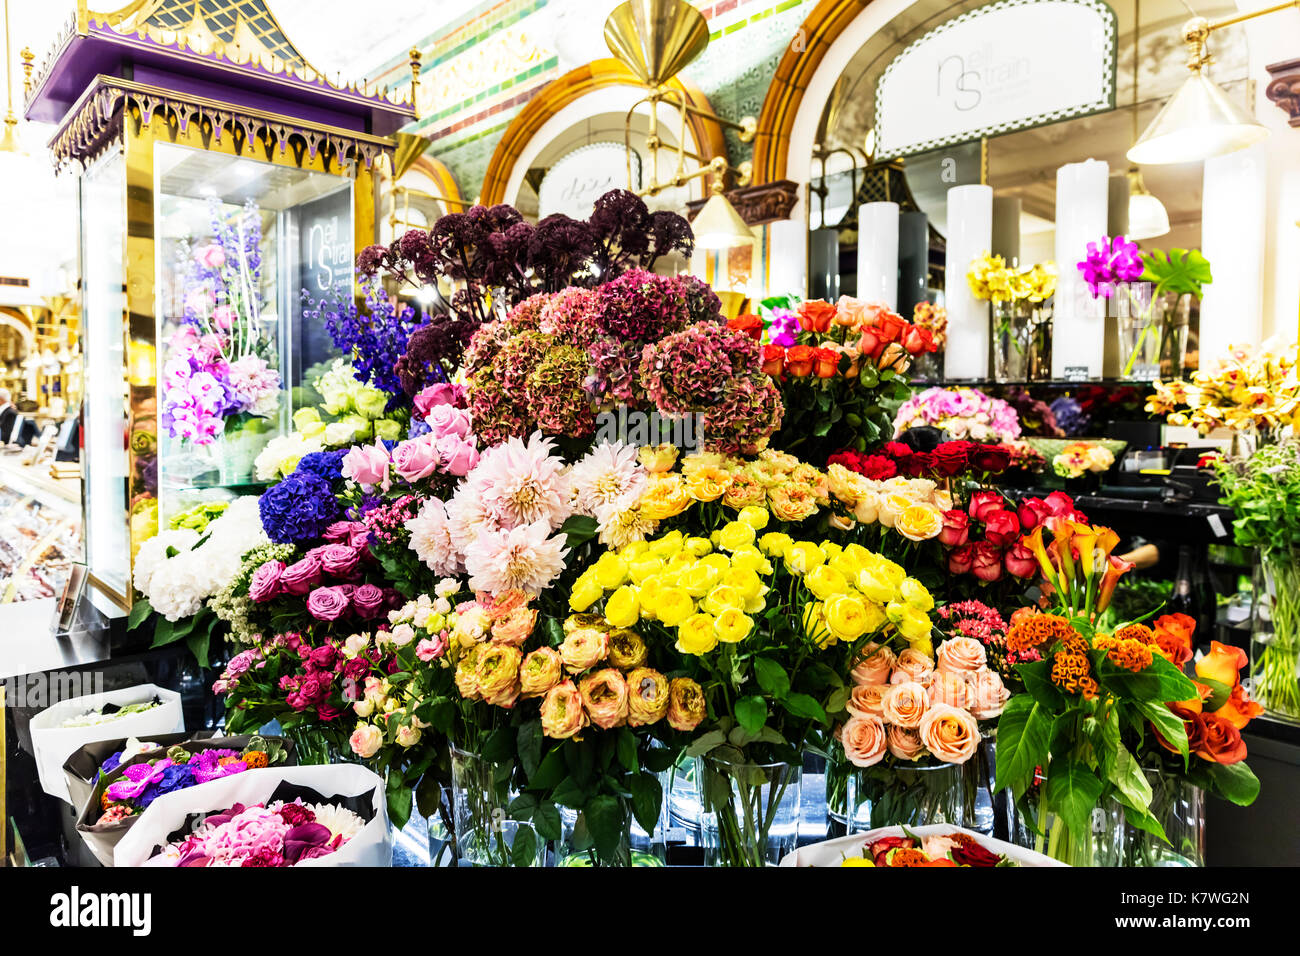 Affichage affichage floral, fleuriste, boutique de fleurs, fleurs, fleurs, fleurs, magasin de fleurs, fleurs d'affichage boutique, magasin de fleurs, uk Banque D'Images